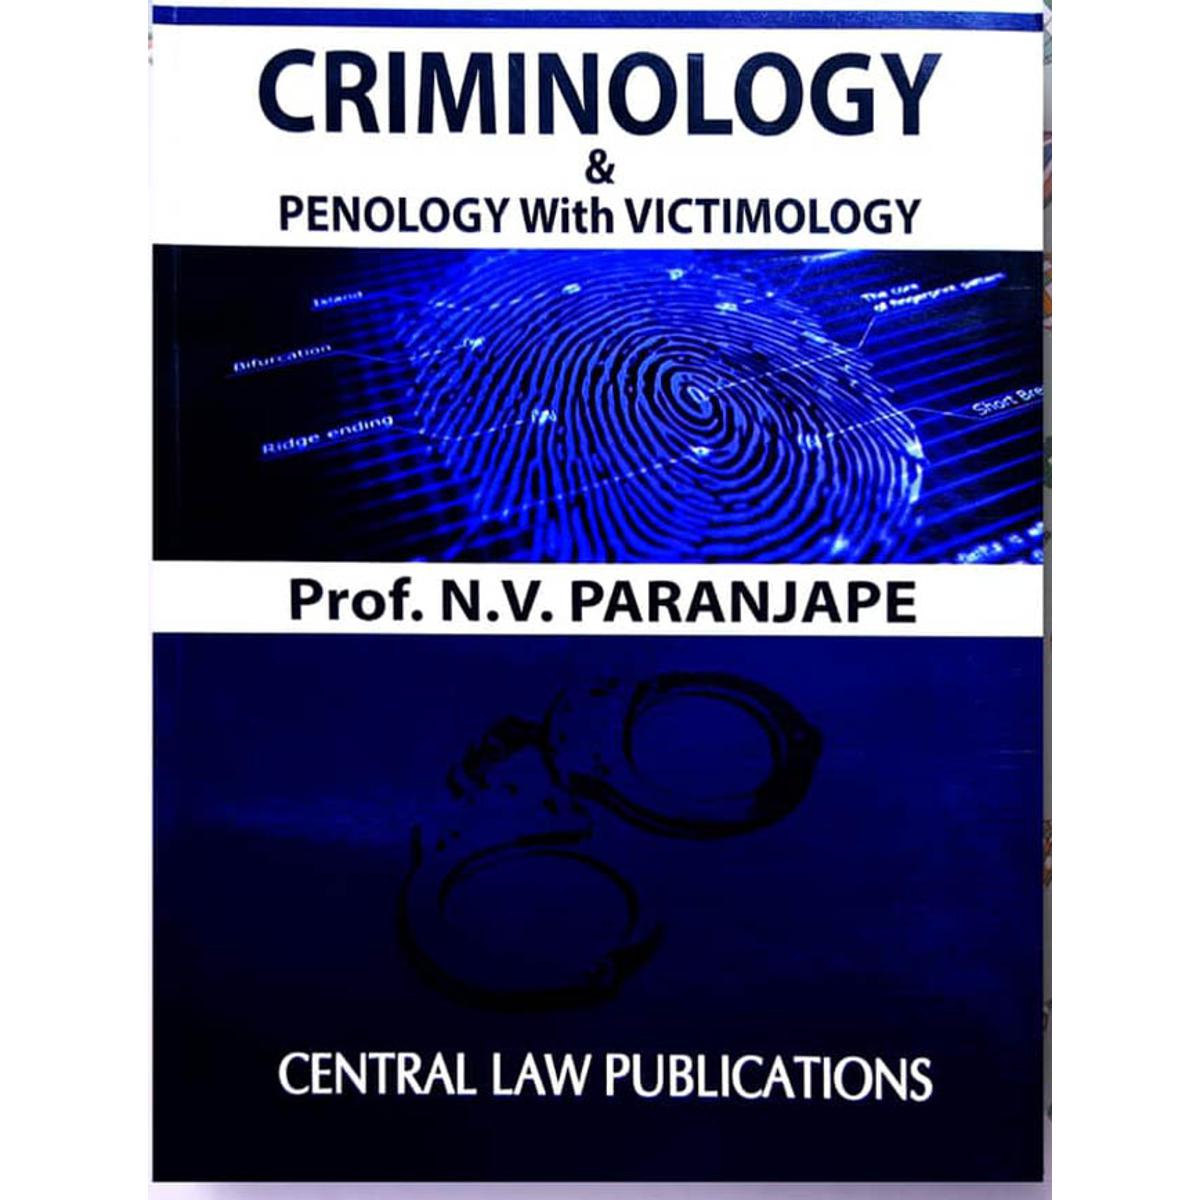 Criminology by Prof. N.V. Paranjape